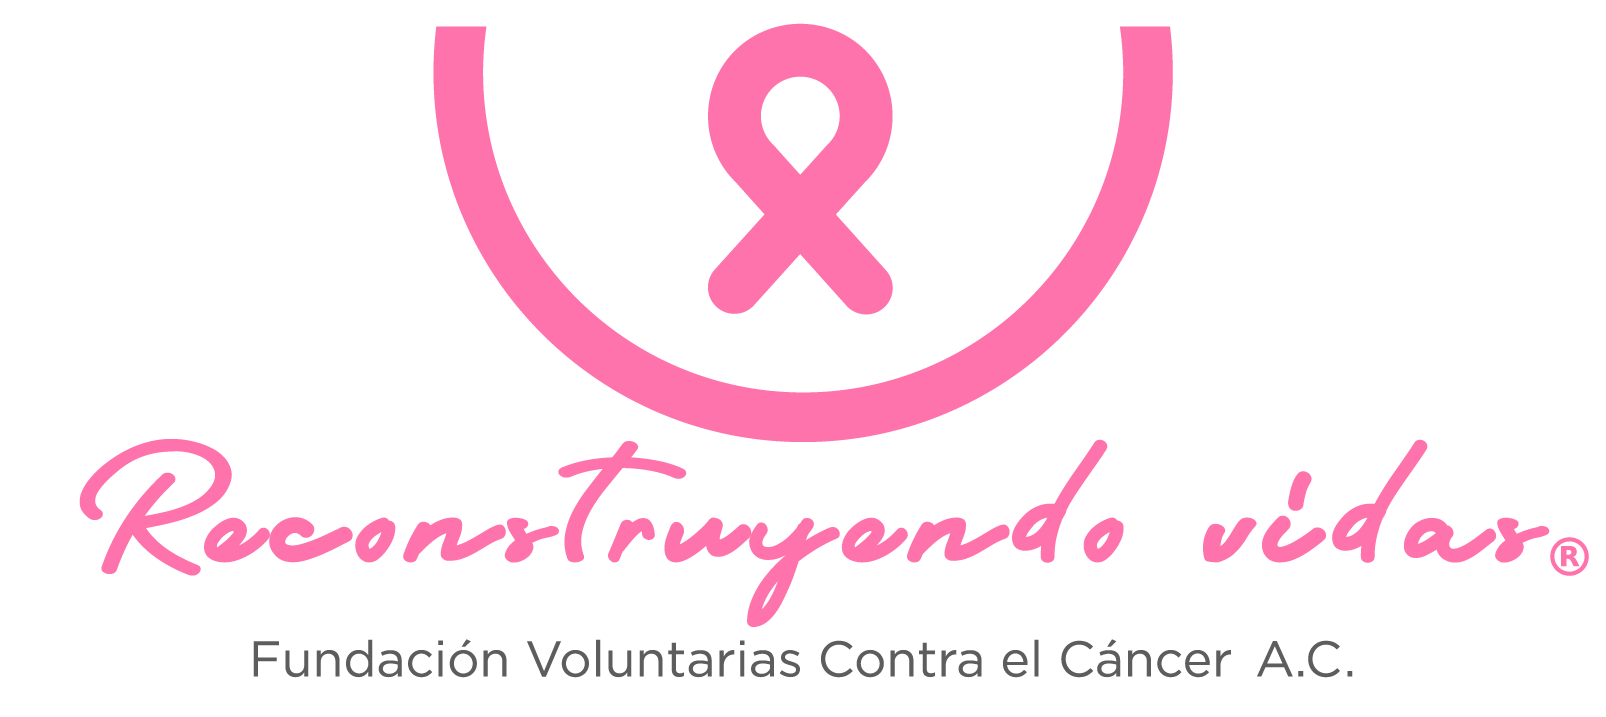 Logo Reconstruyendo Vidas  Fundación Voluntarias Contra el Cáncer, A.C.  Uniendo Esfuerzos en Guadalajara